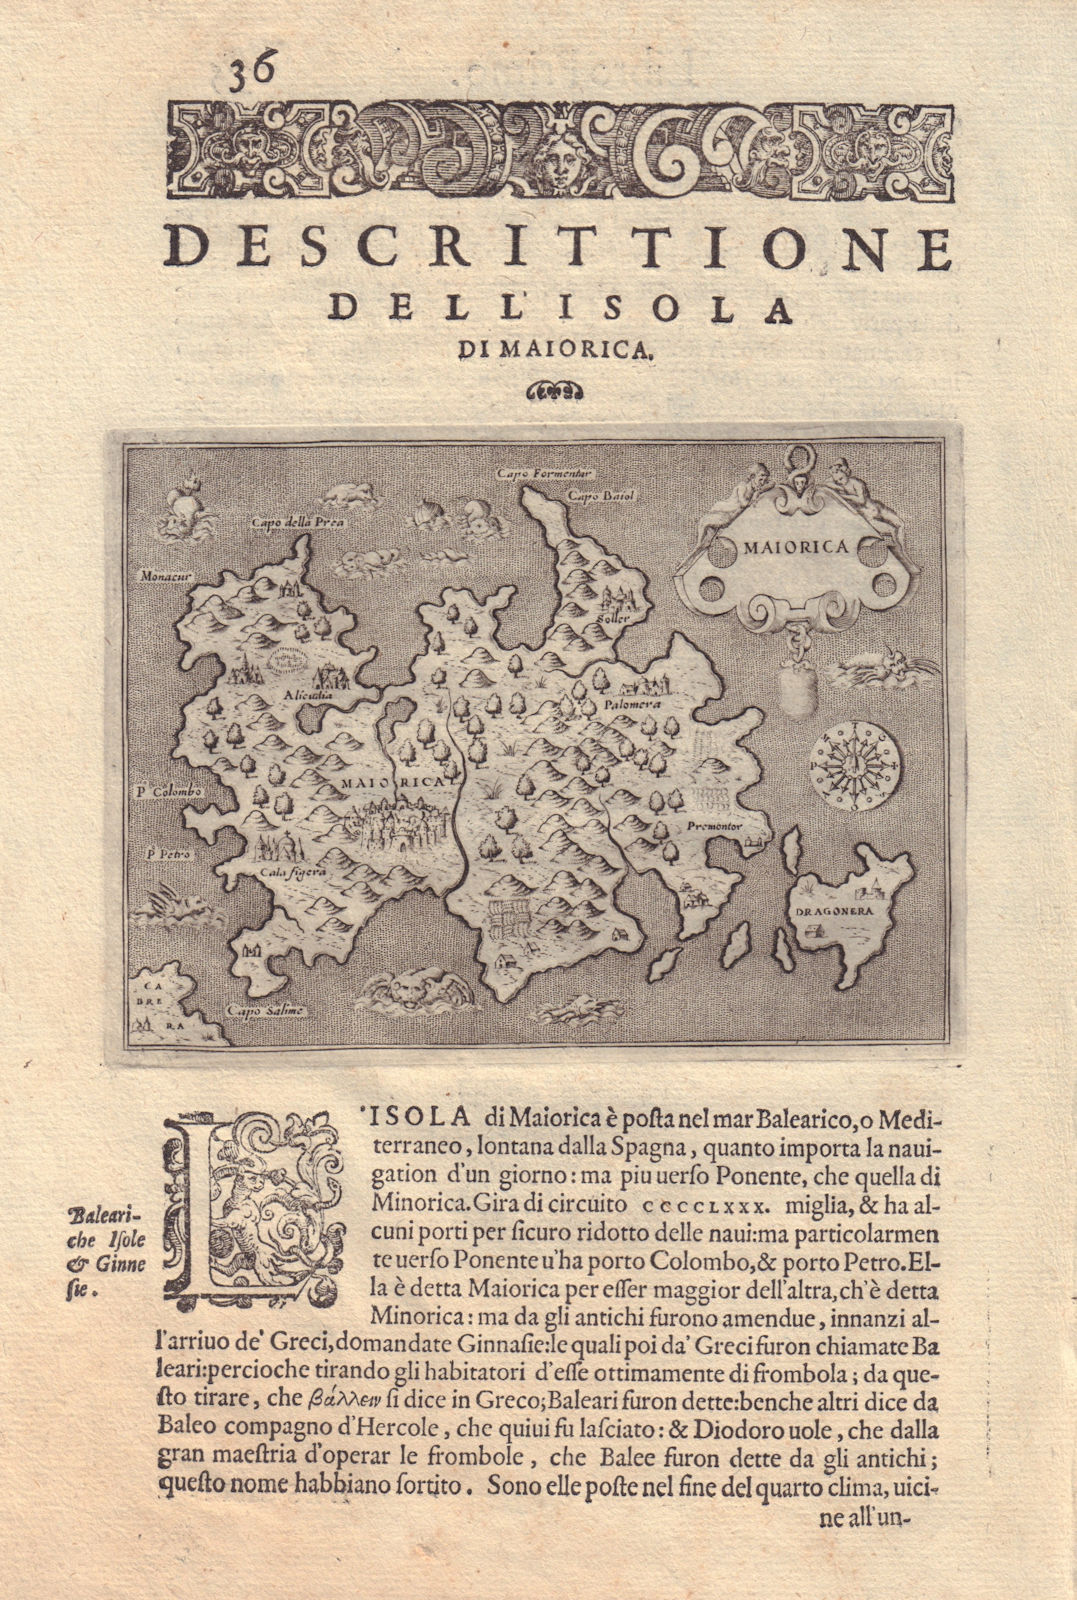 Descrittione dell' Isola do Maiorica by PORCACCHI. Majorca Mallorca 1590 map